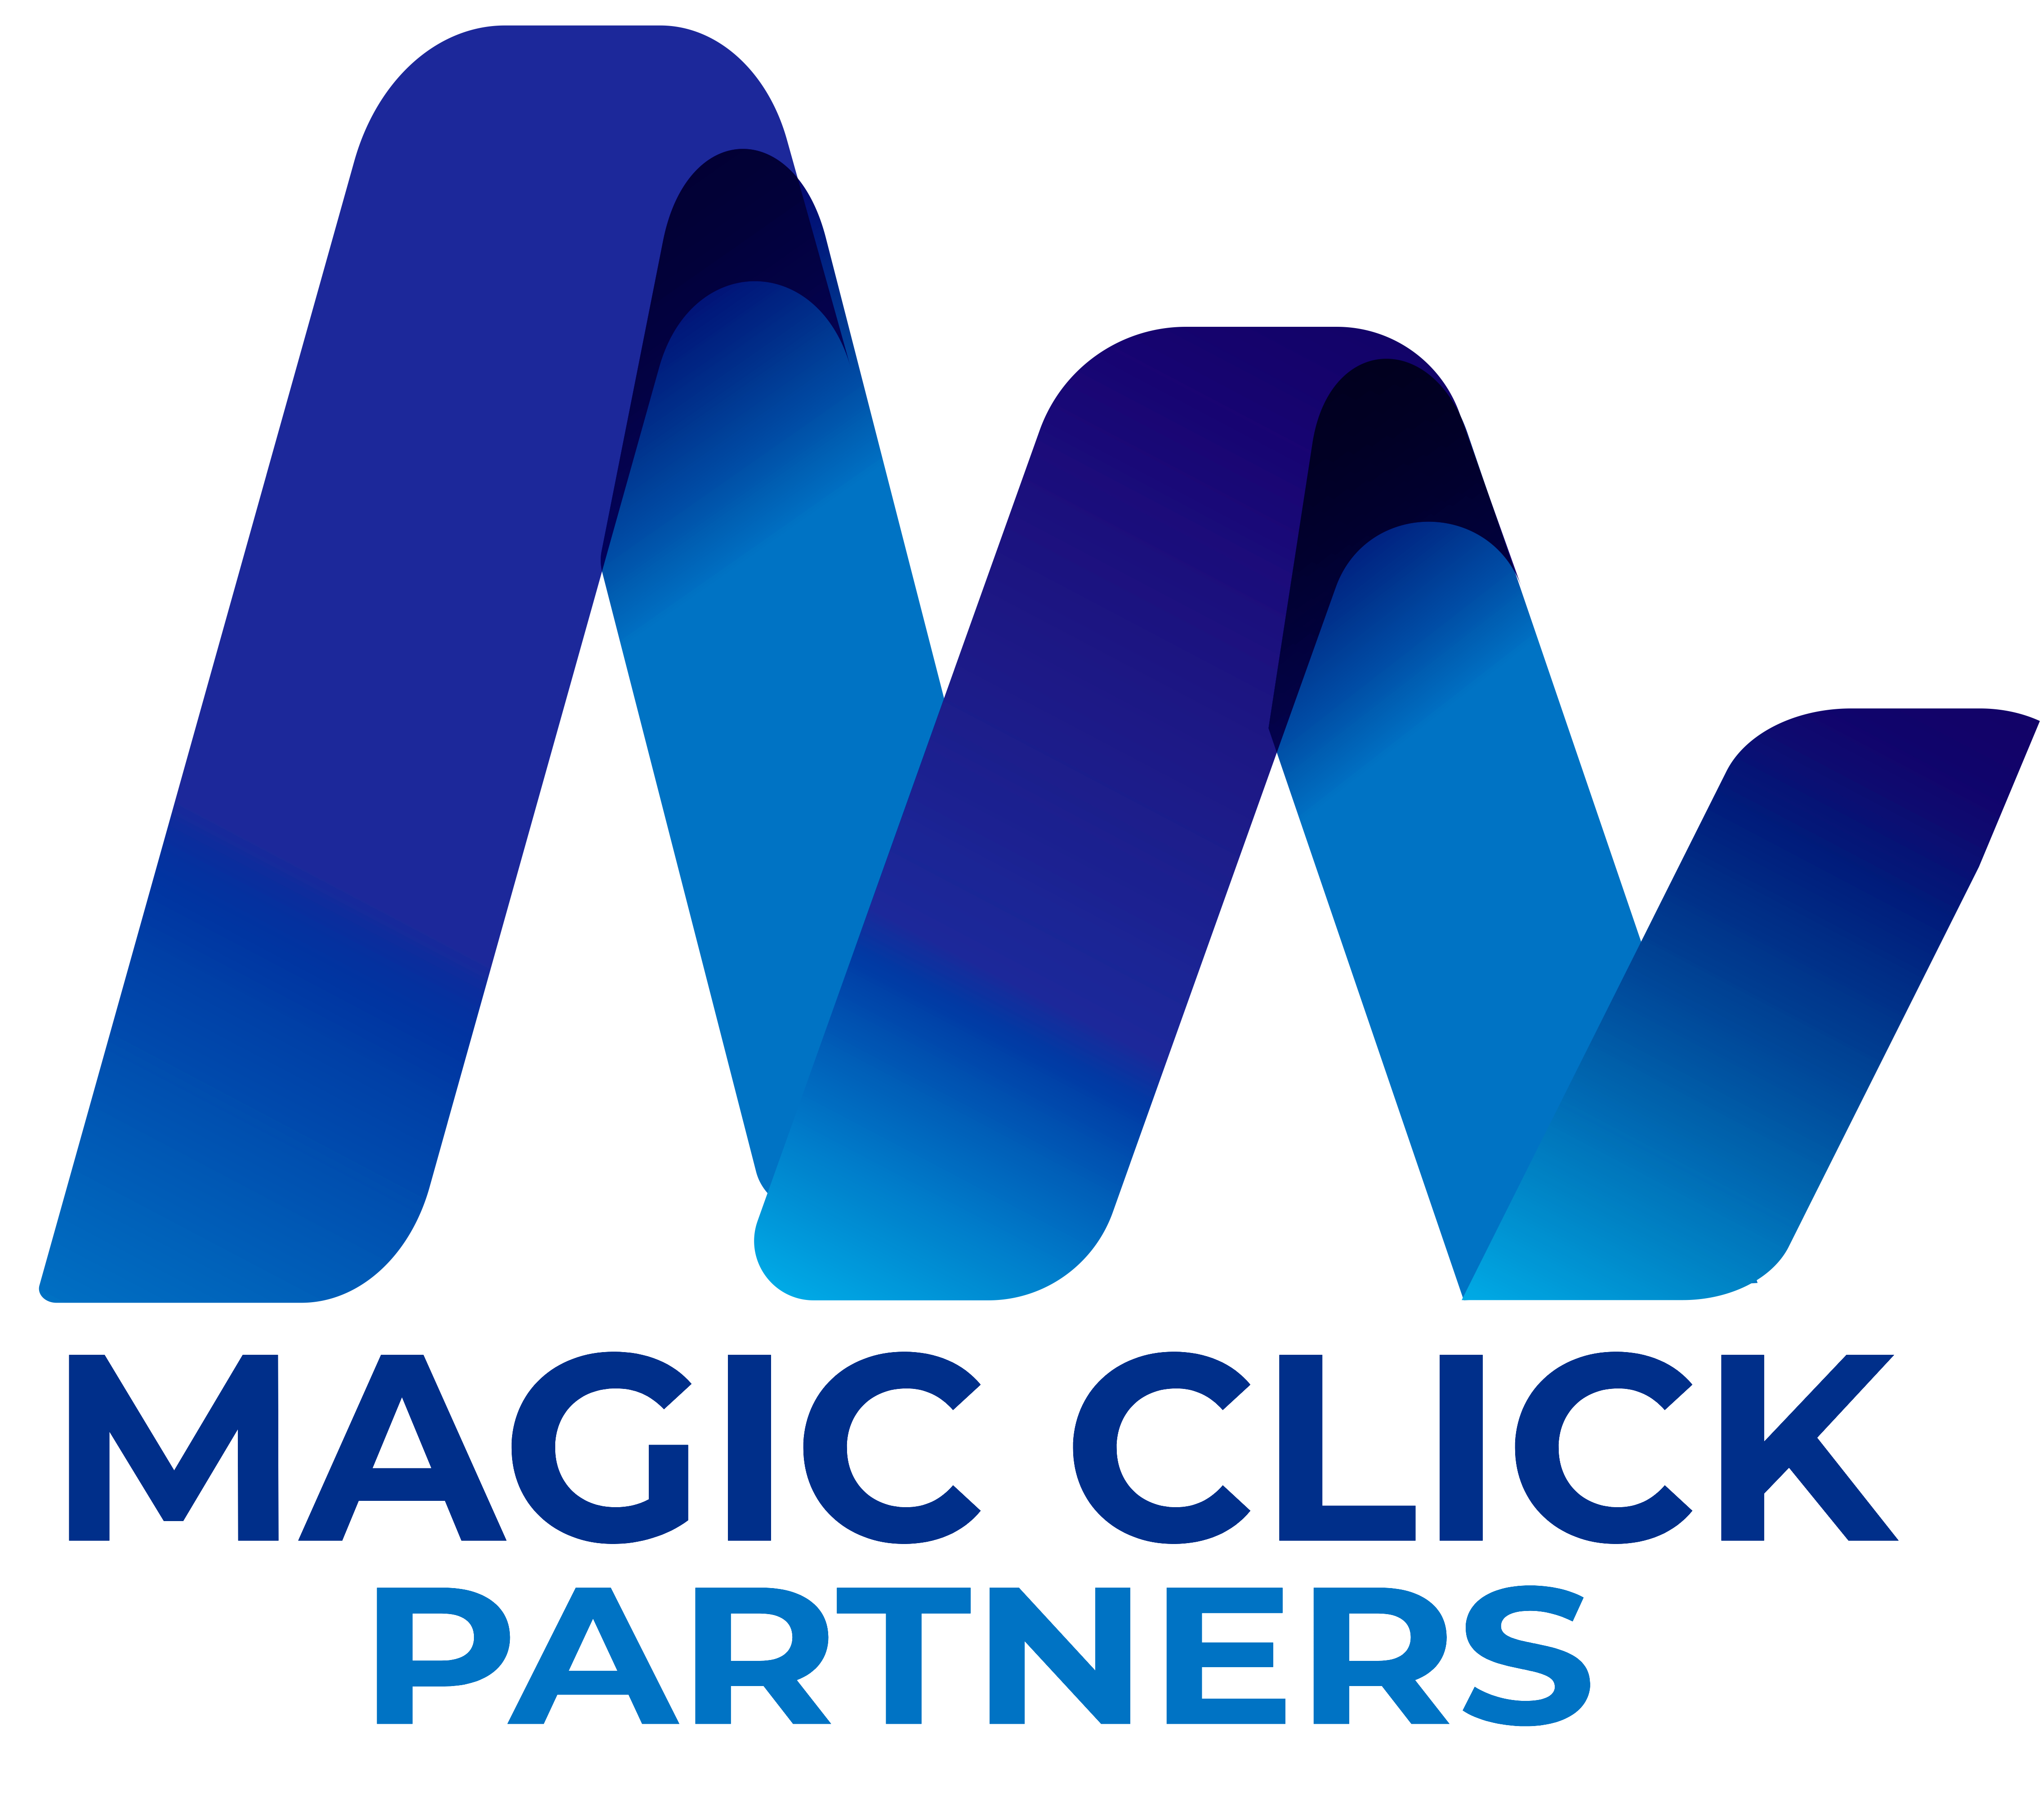 Magic click partners. Partners click id